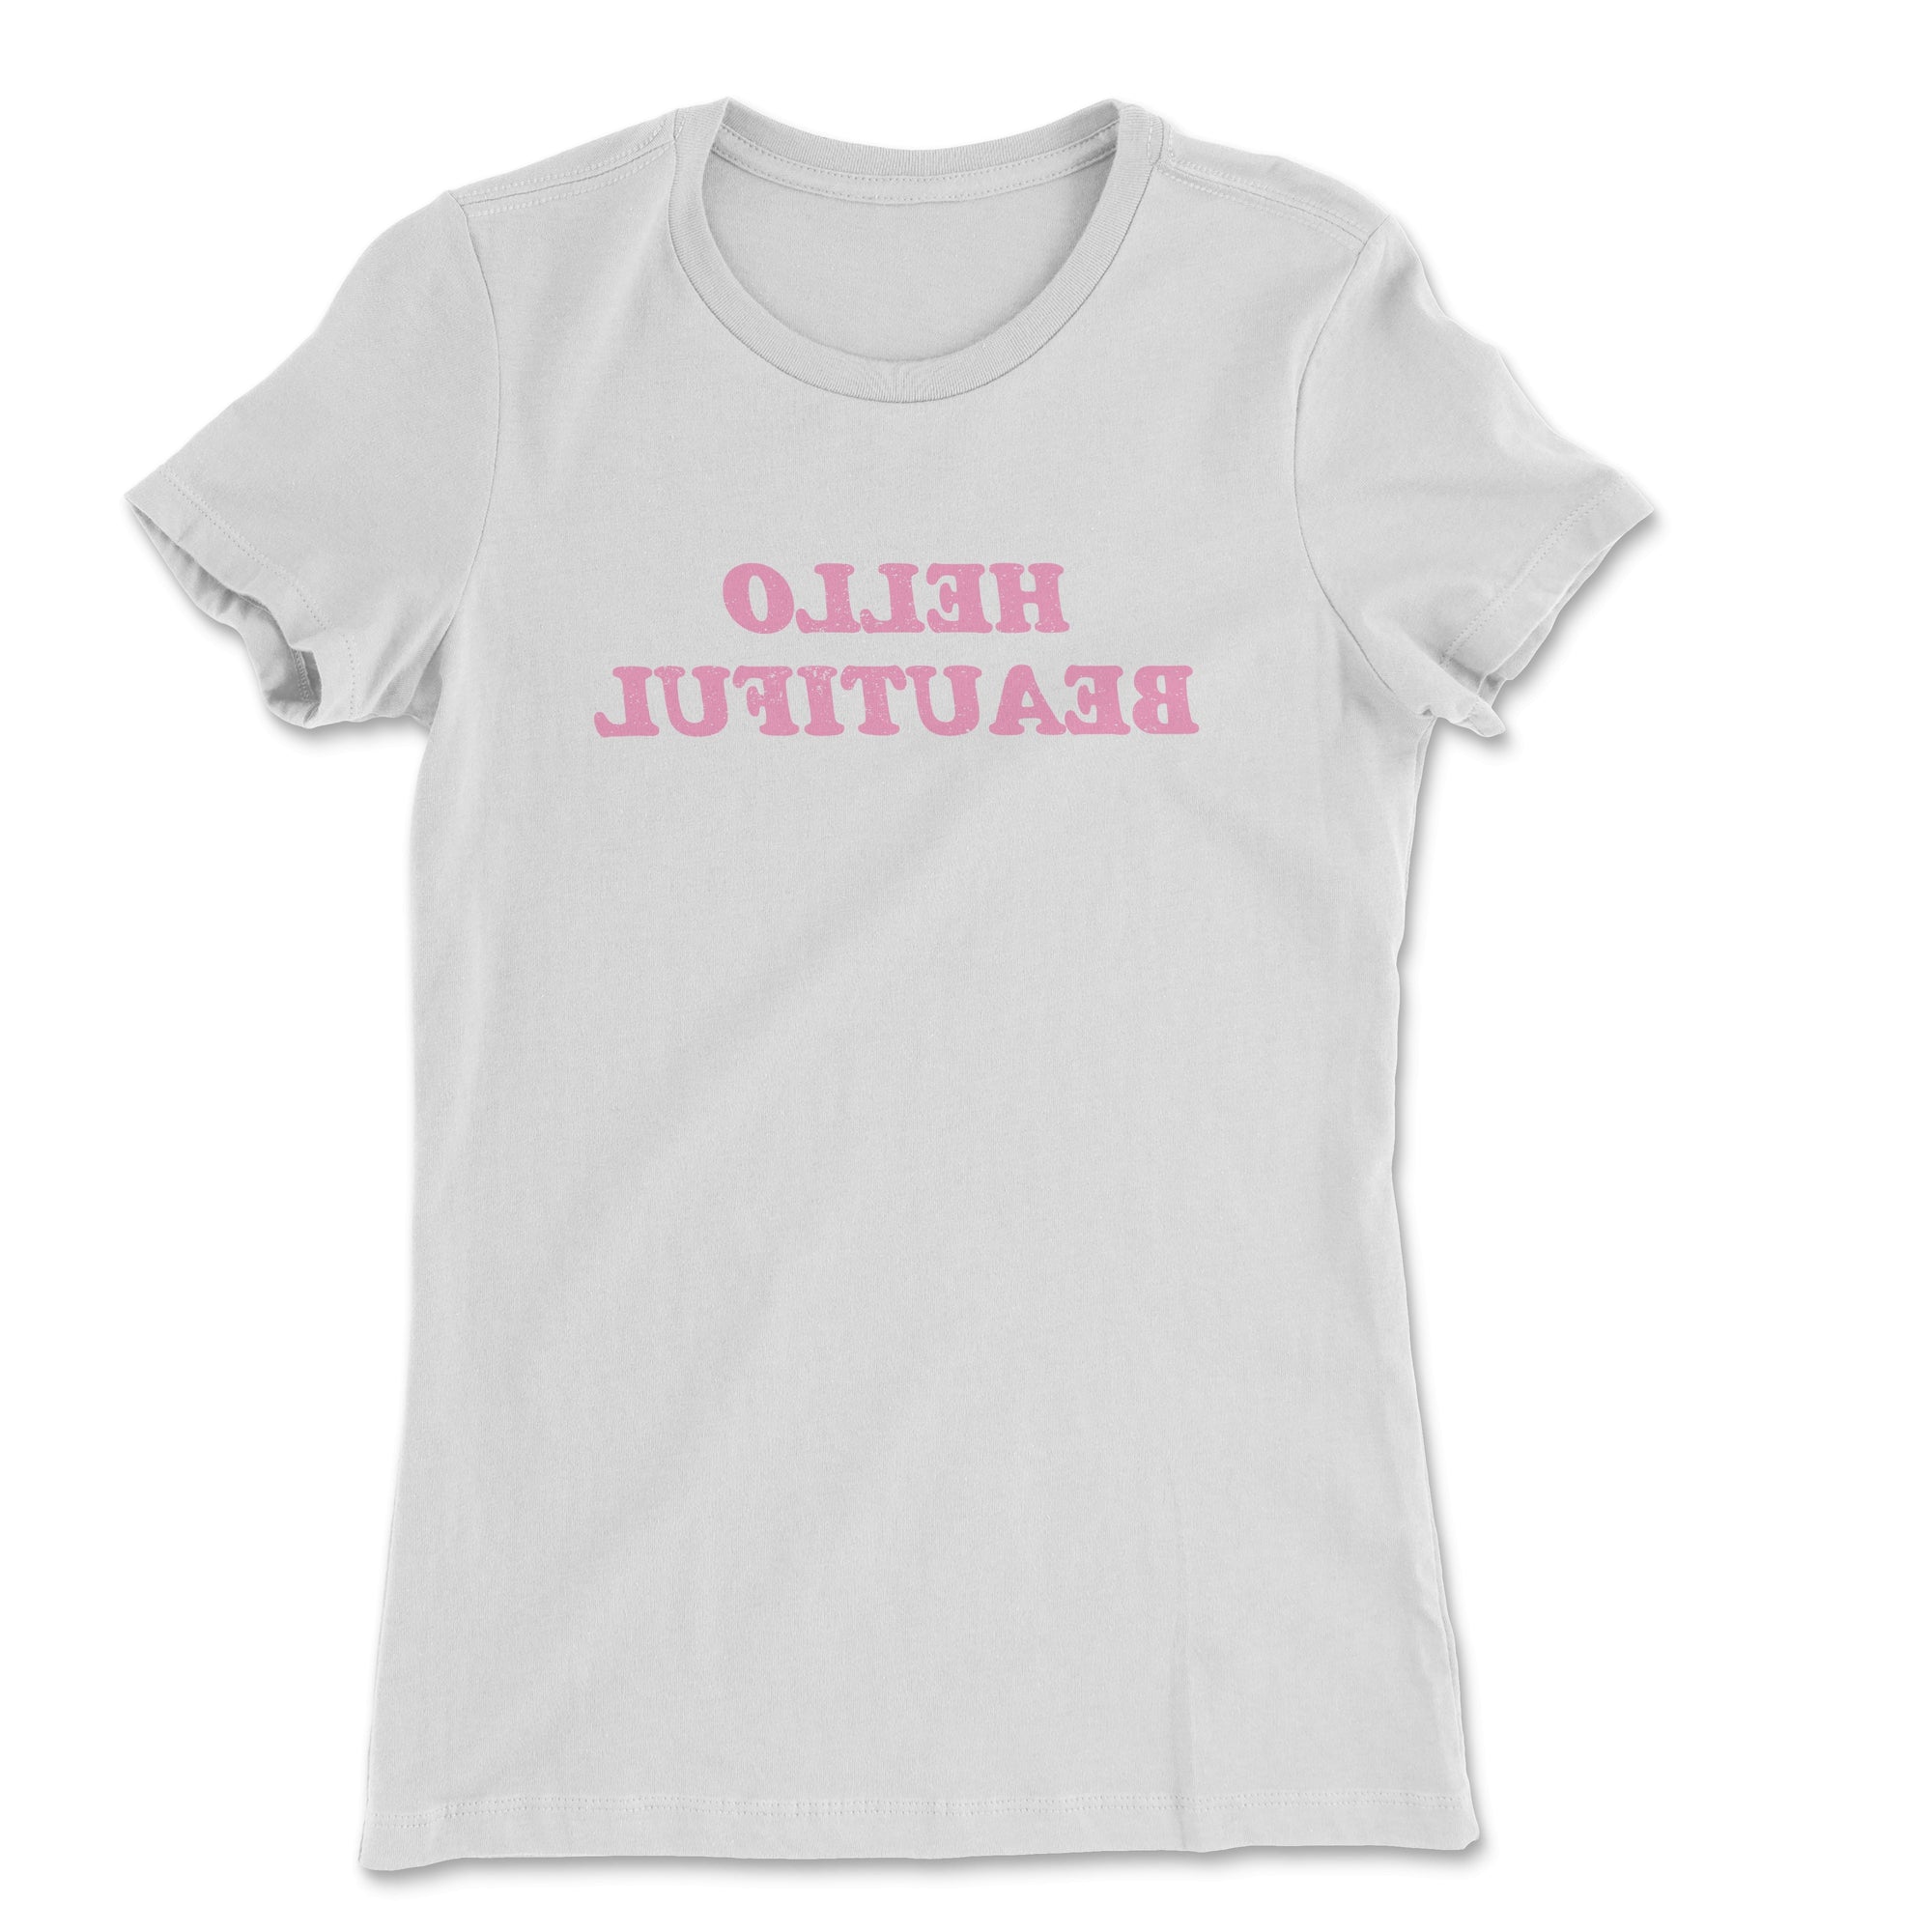 Hello Beautiful Women's T-Shirt - anishphilip